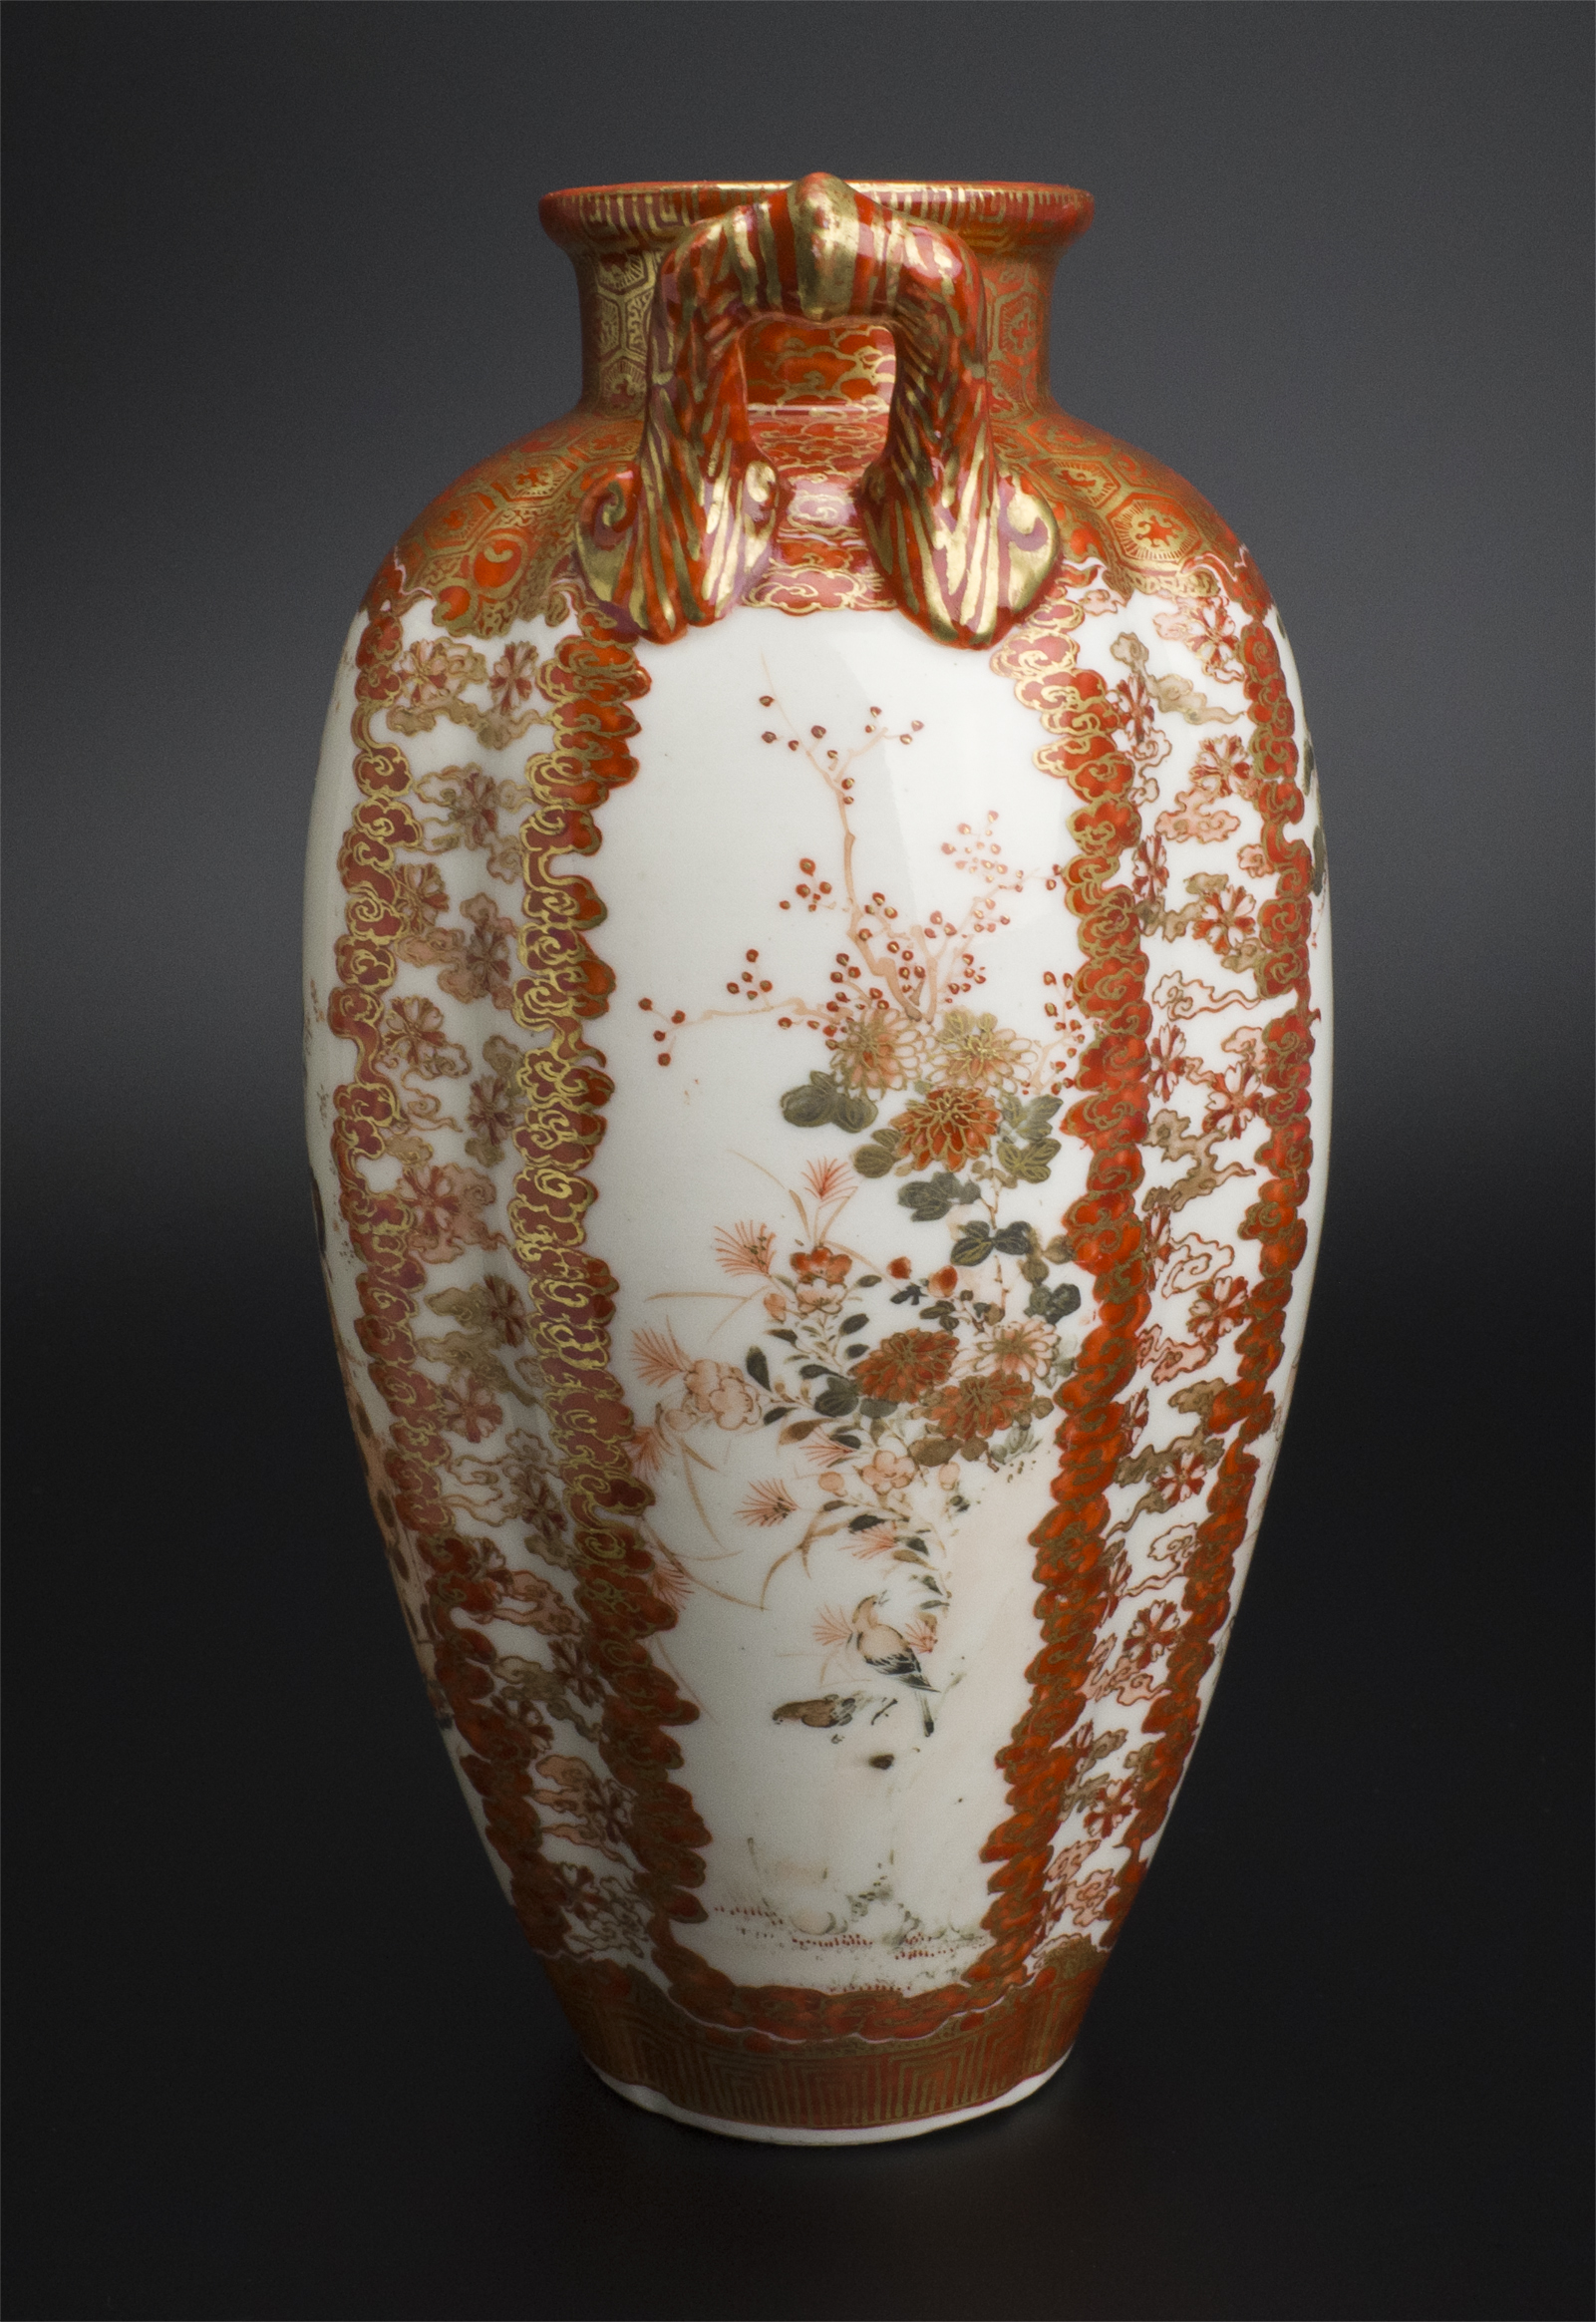 史博物館加賀九谷綿野製 金彩人物紋瓶 明治時代 古美術 花器、壷